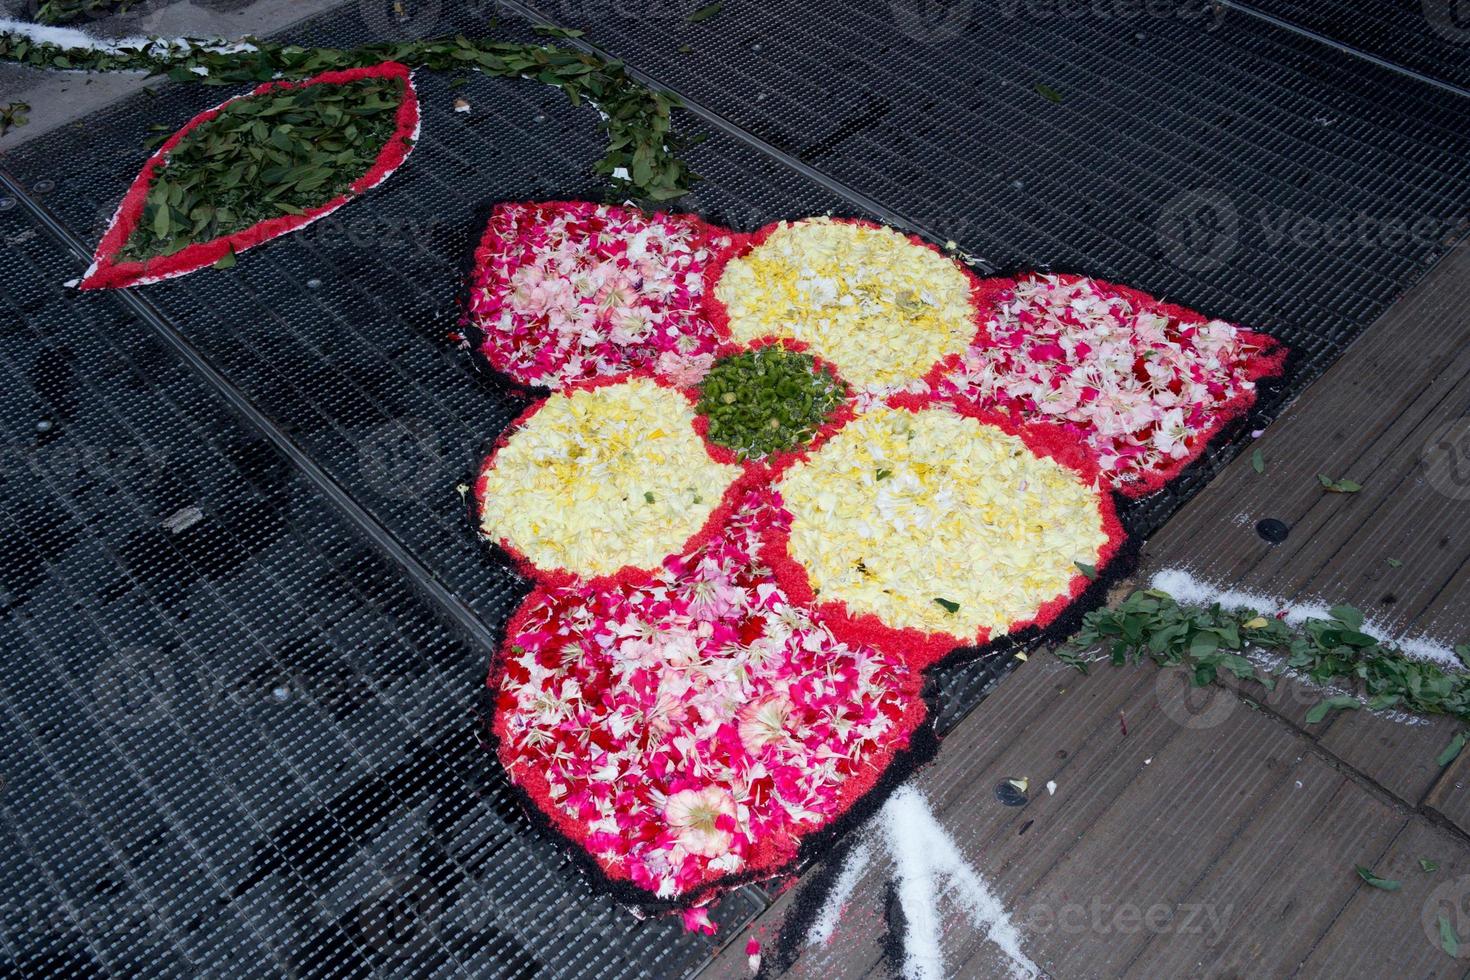 tapis de pétales et de fleurs pour la célébration du corpus domini christi photo